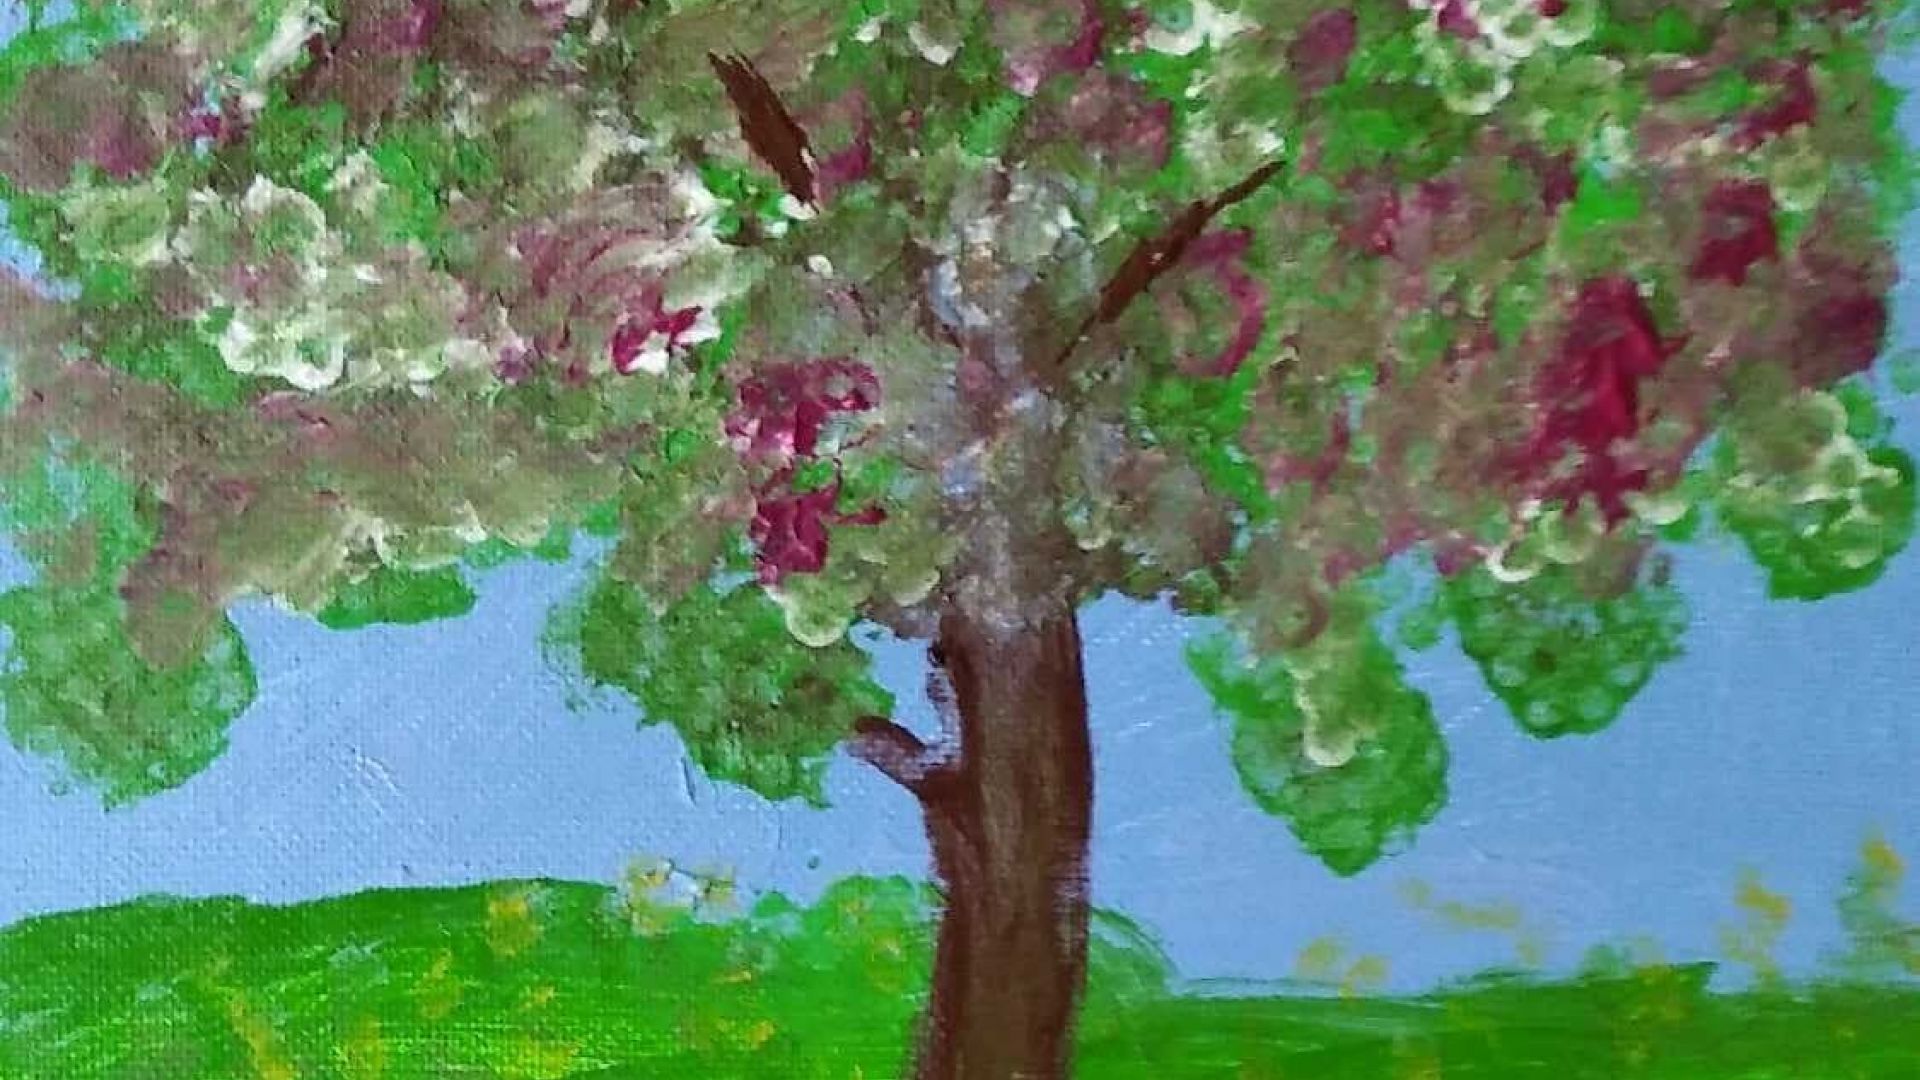 Obraz kwitnącego drzewa, z żółtymi kwiatami na zielonej łące i niebieskim tłem wykonany farbami. Autor: Tadeusz A.